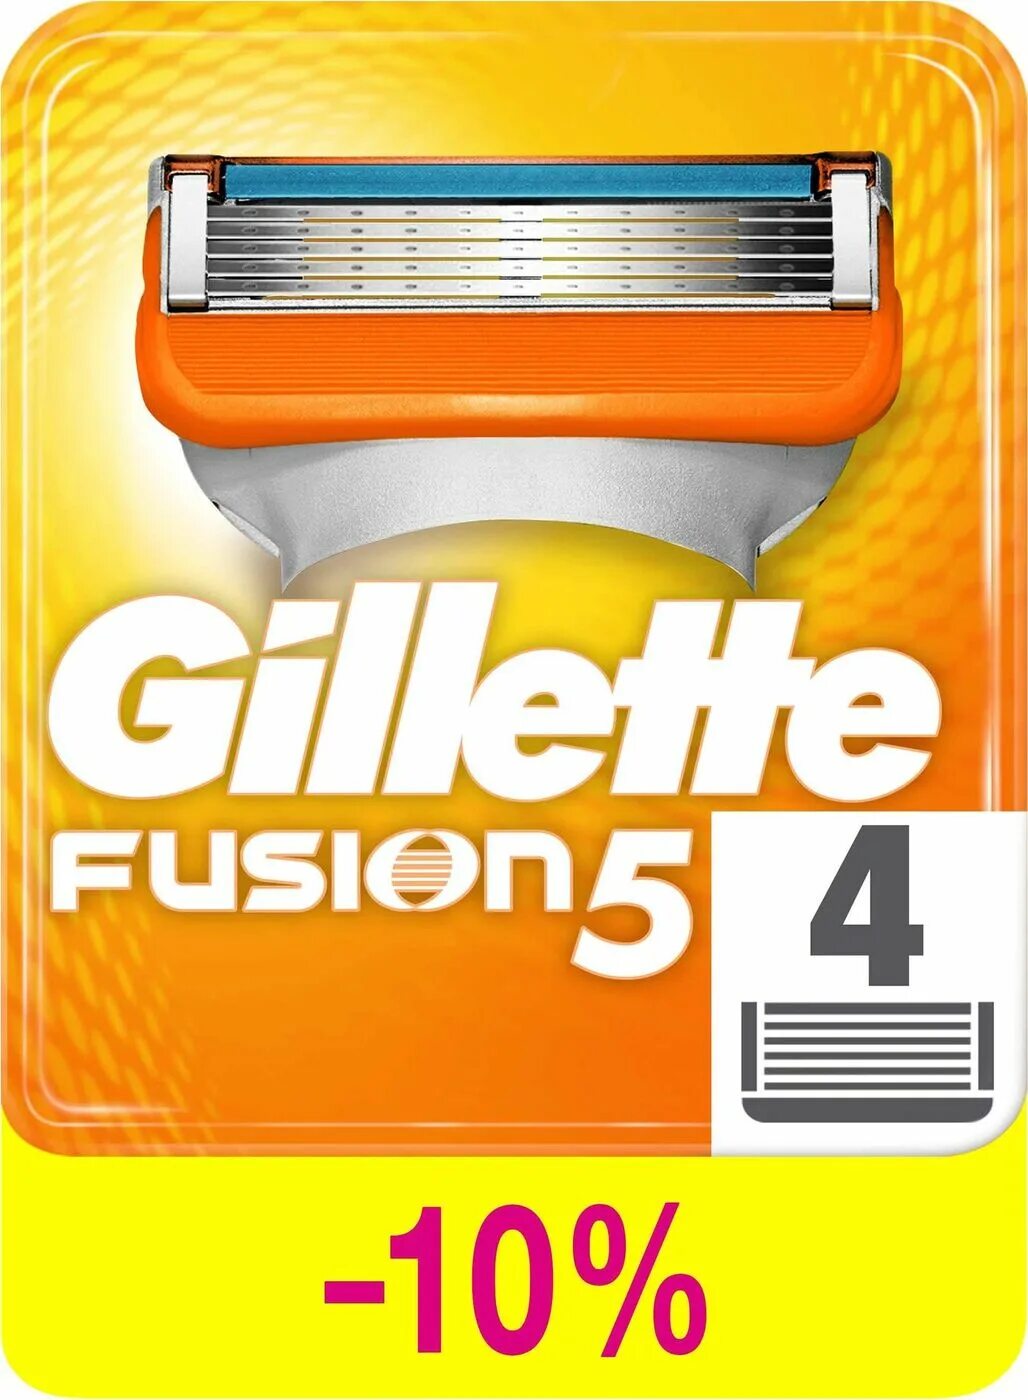 Кассеты для бритья фьюжен 5. Сменные кассеты для бритвы джилет 5. Сменные кассеты джилет Фьюжен 5. Кассеты бритва Мак 5 Fusion.